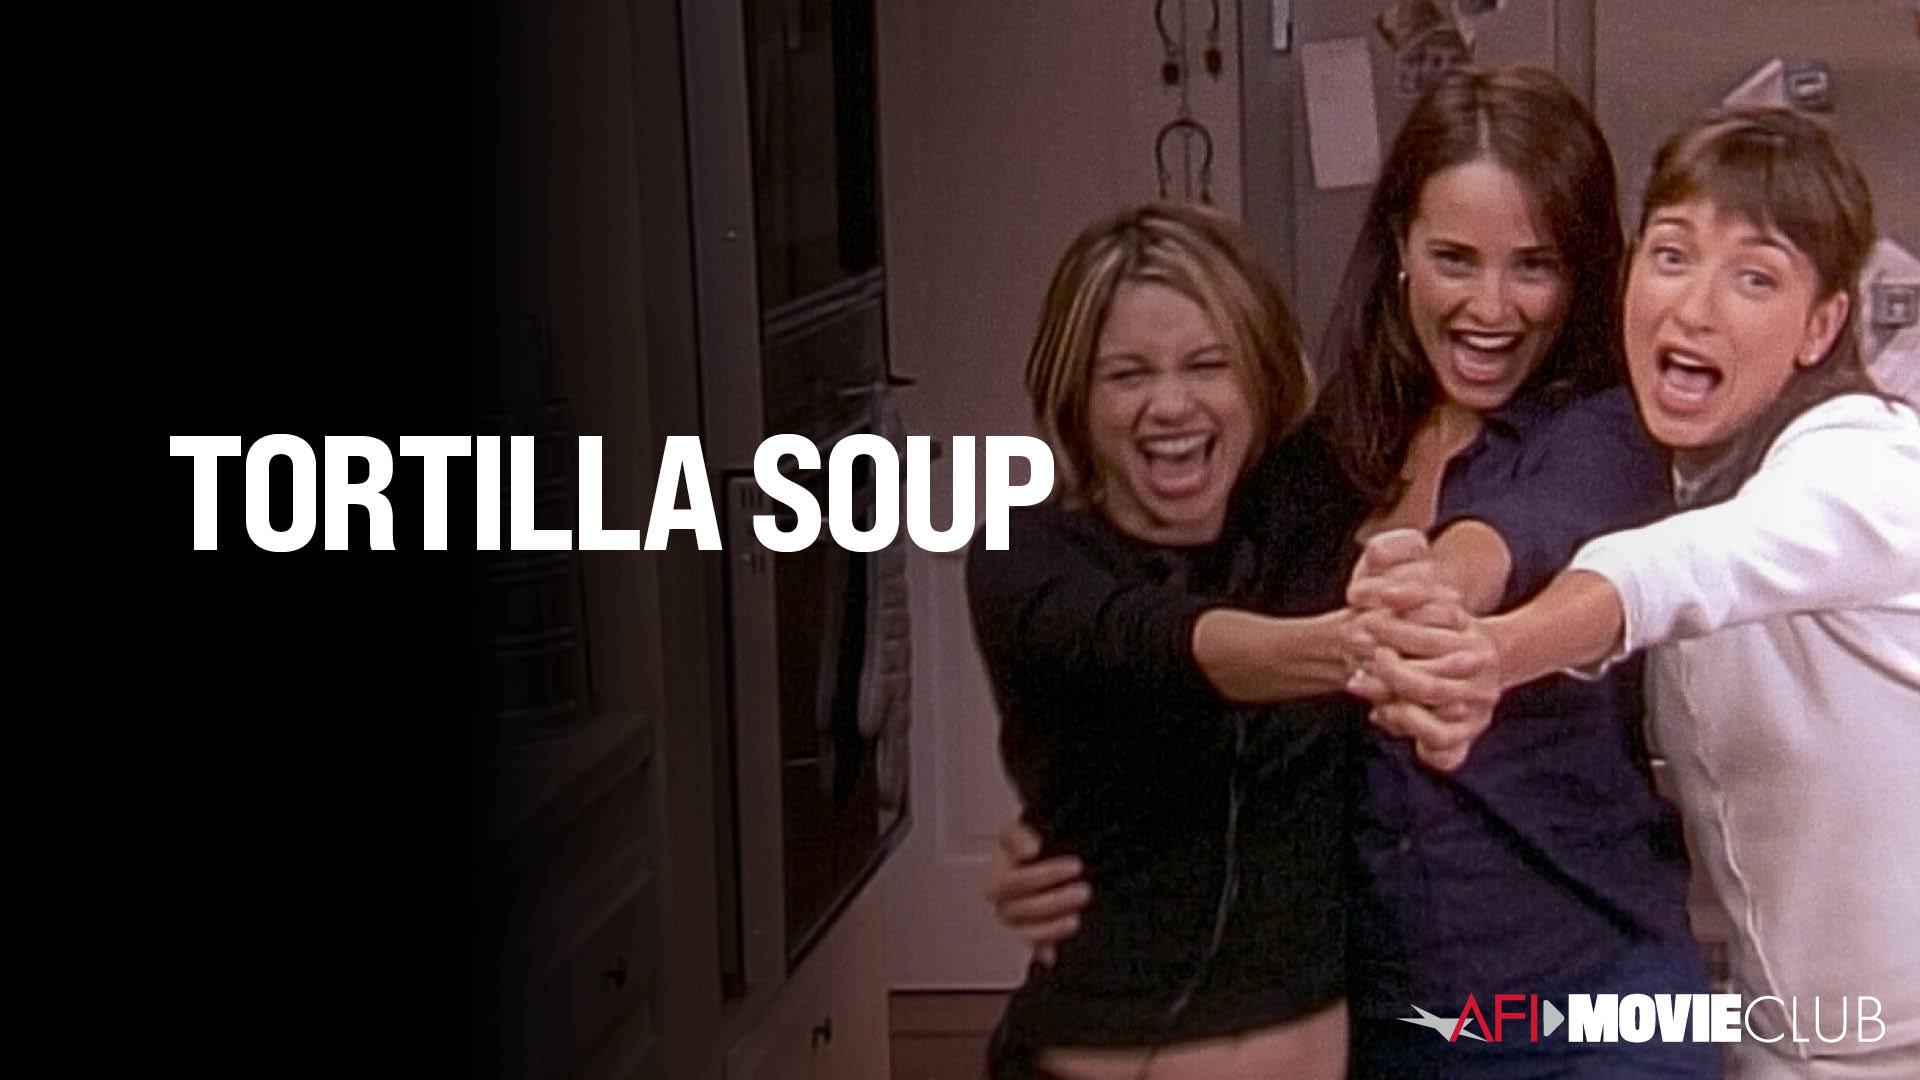 Tortilla Soup Film Still - Elizabeth Peña, Tamara Mello, and Jacqueline Obradors